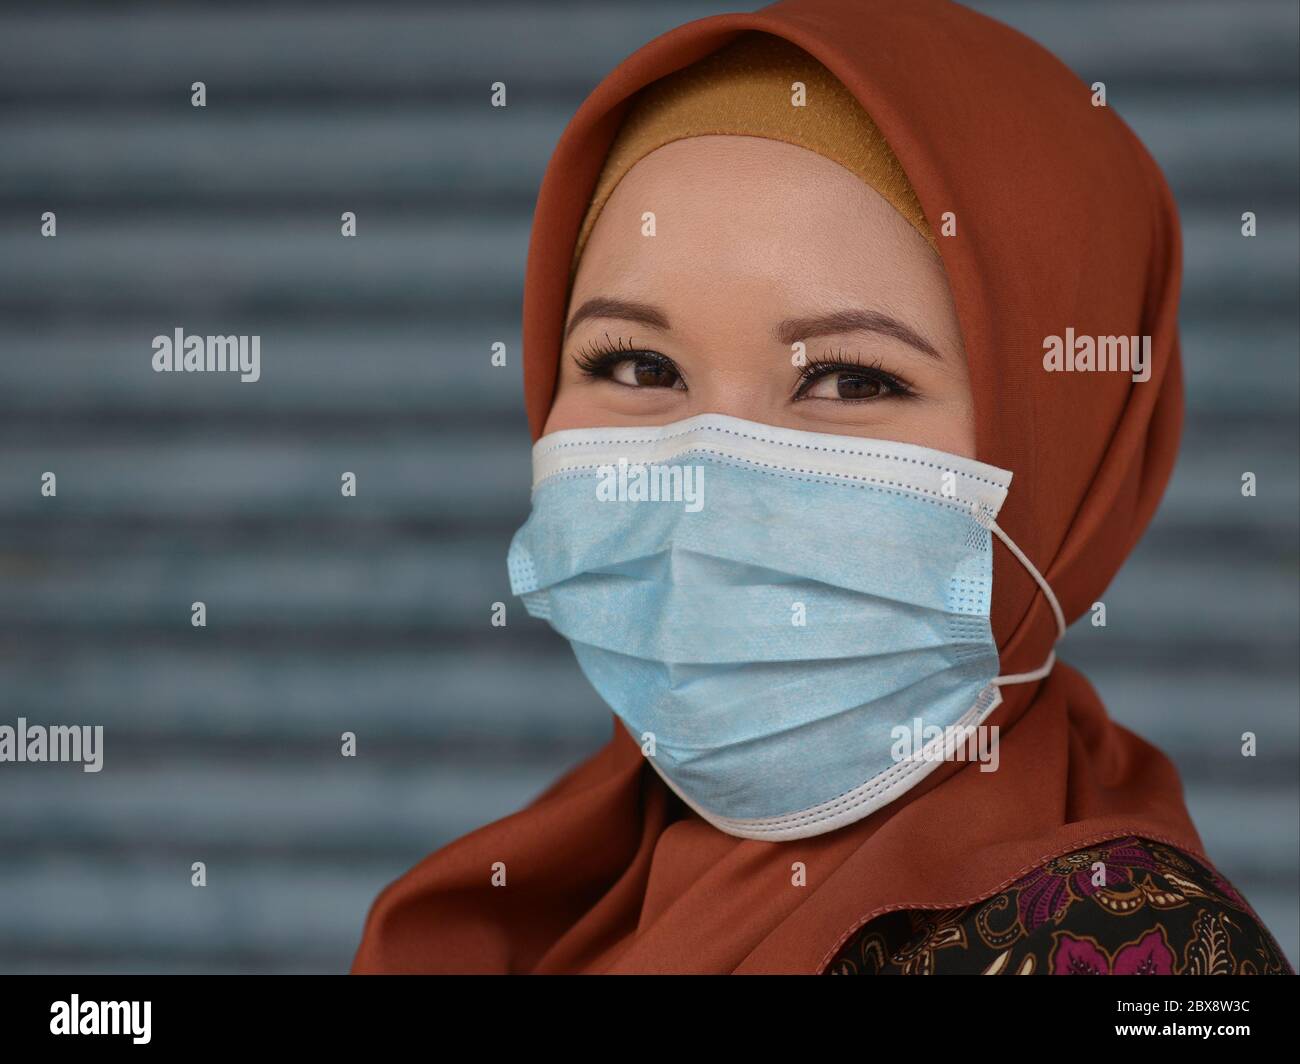 Le jeune Muslimah malaisien aux yeux magnifiques porte un masque chirurgical jetable lors de la pandémie mondiale de 2019/20 du virus corona. Banque D'Images